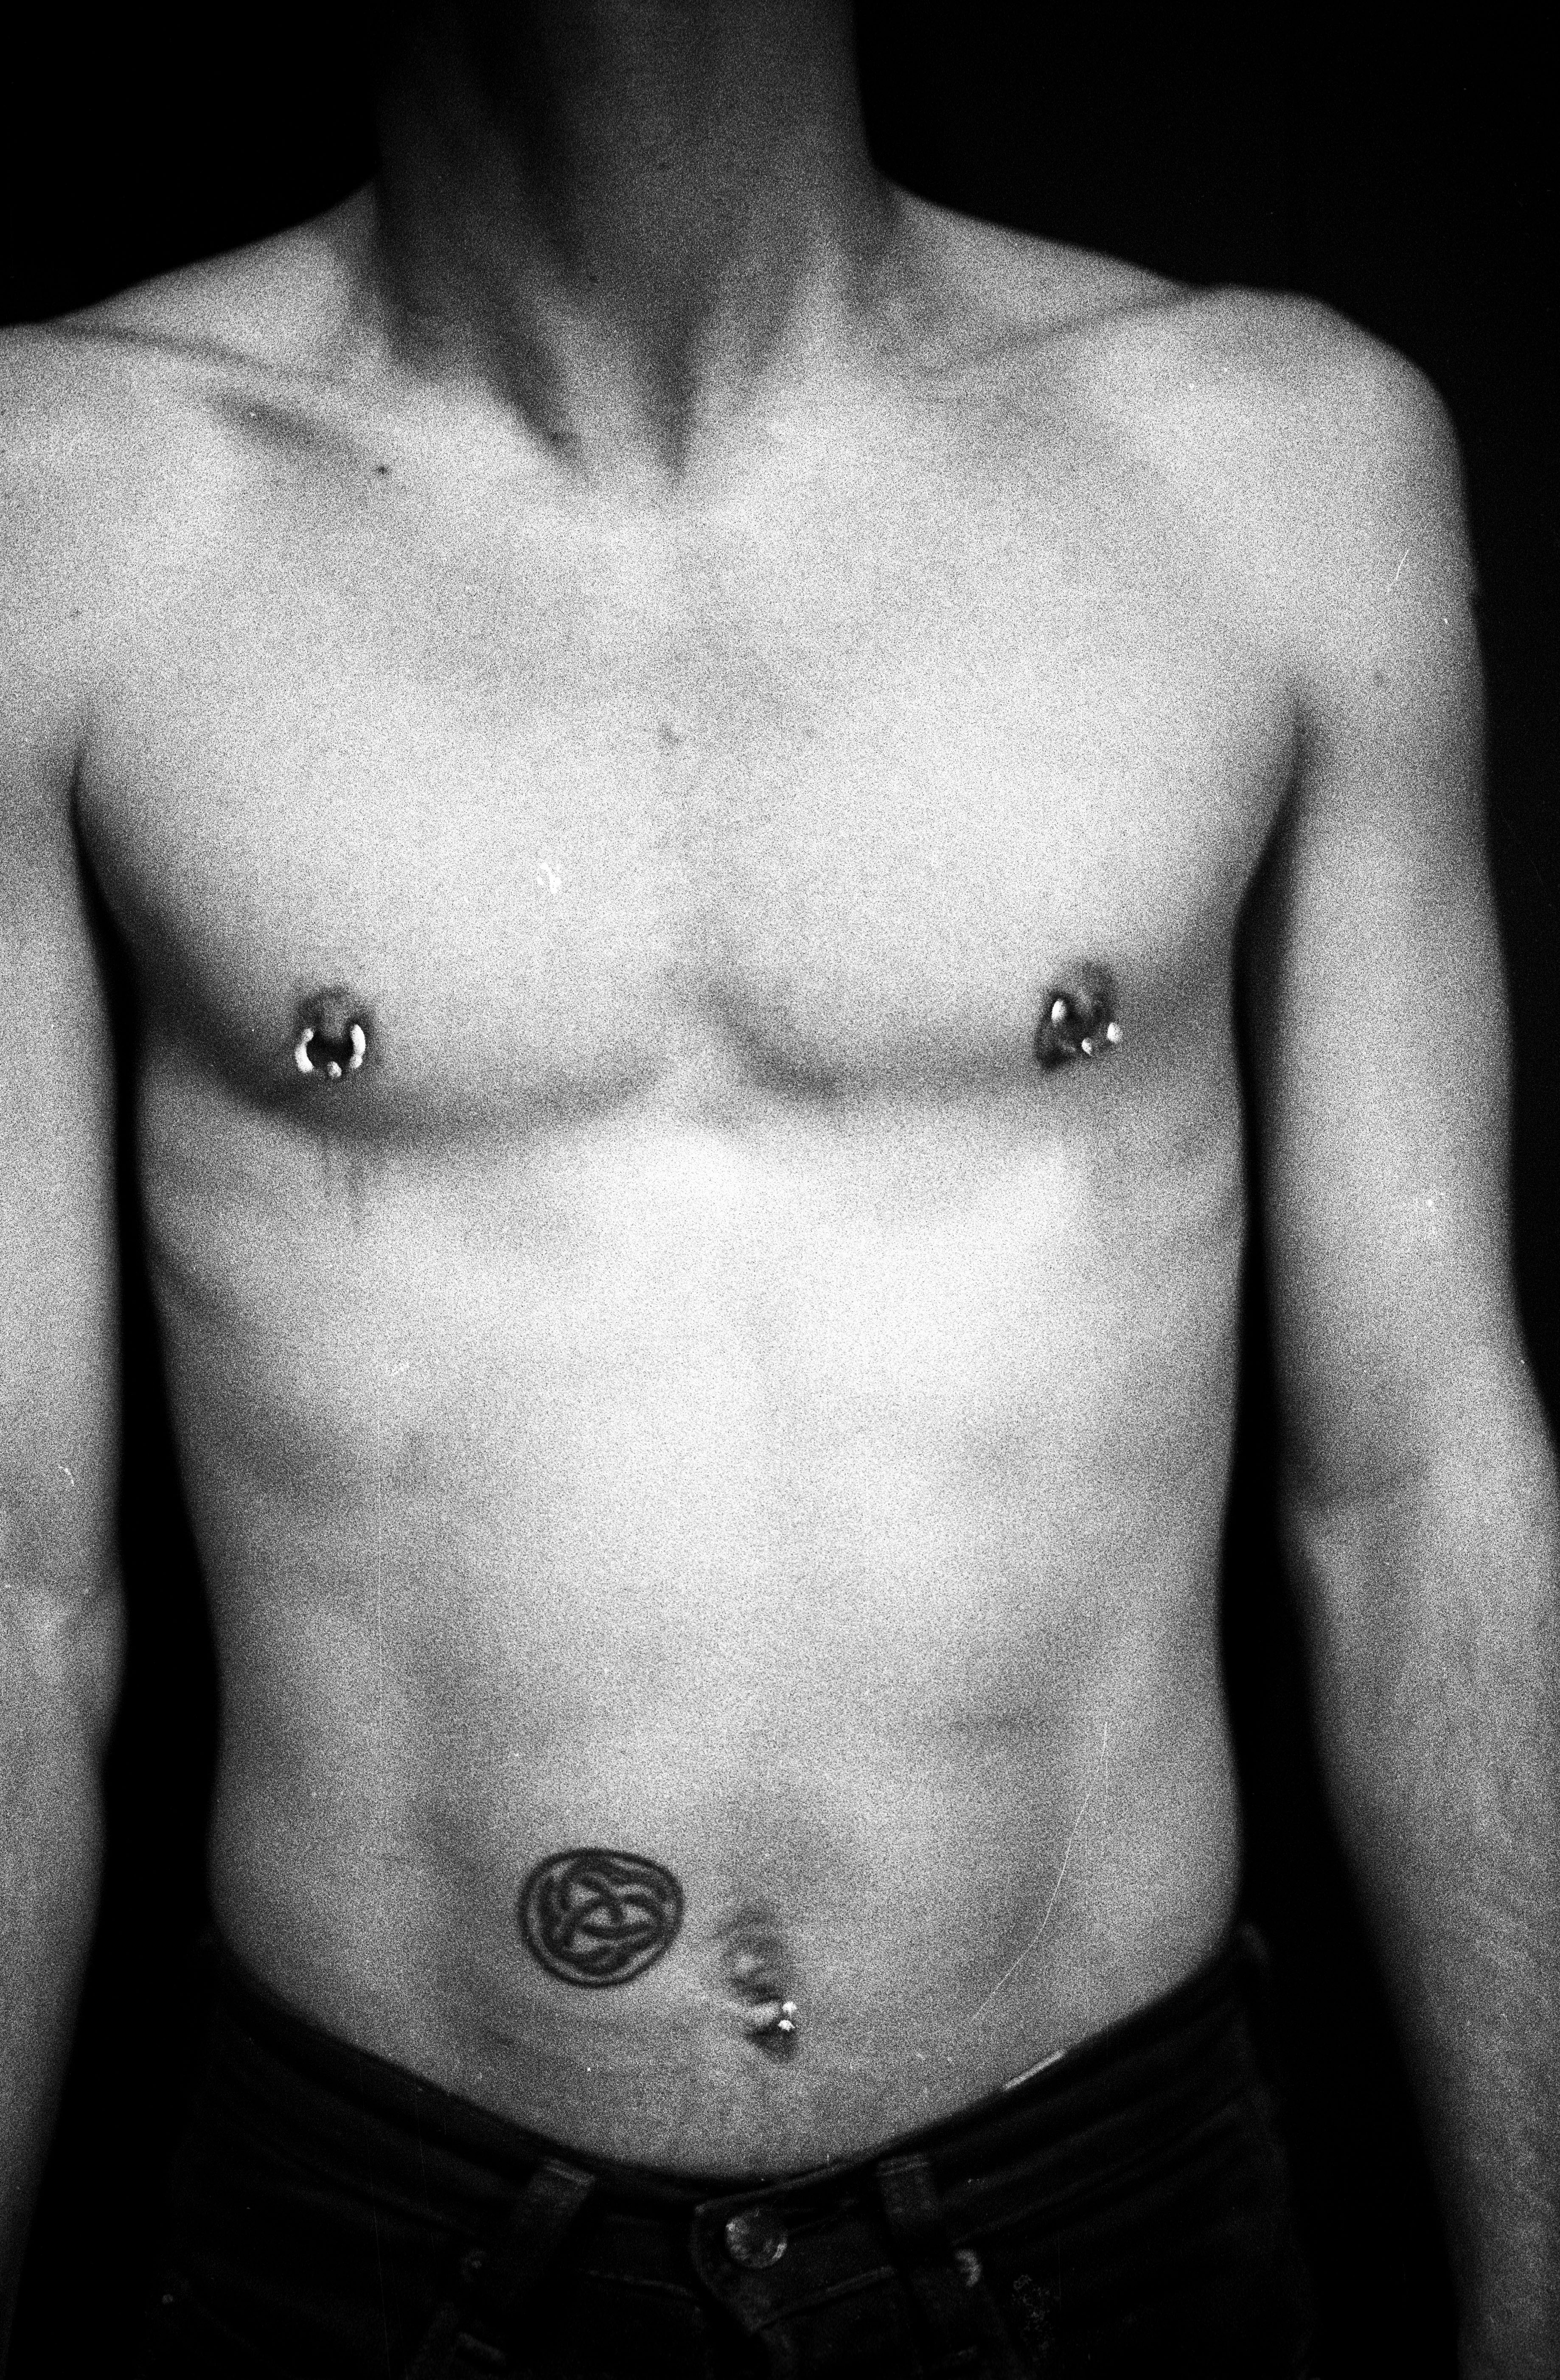 Sekretær at klemme Bogholder File:Male nipple piercings.jpg - Wikimedia Commons